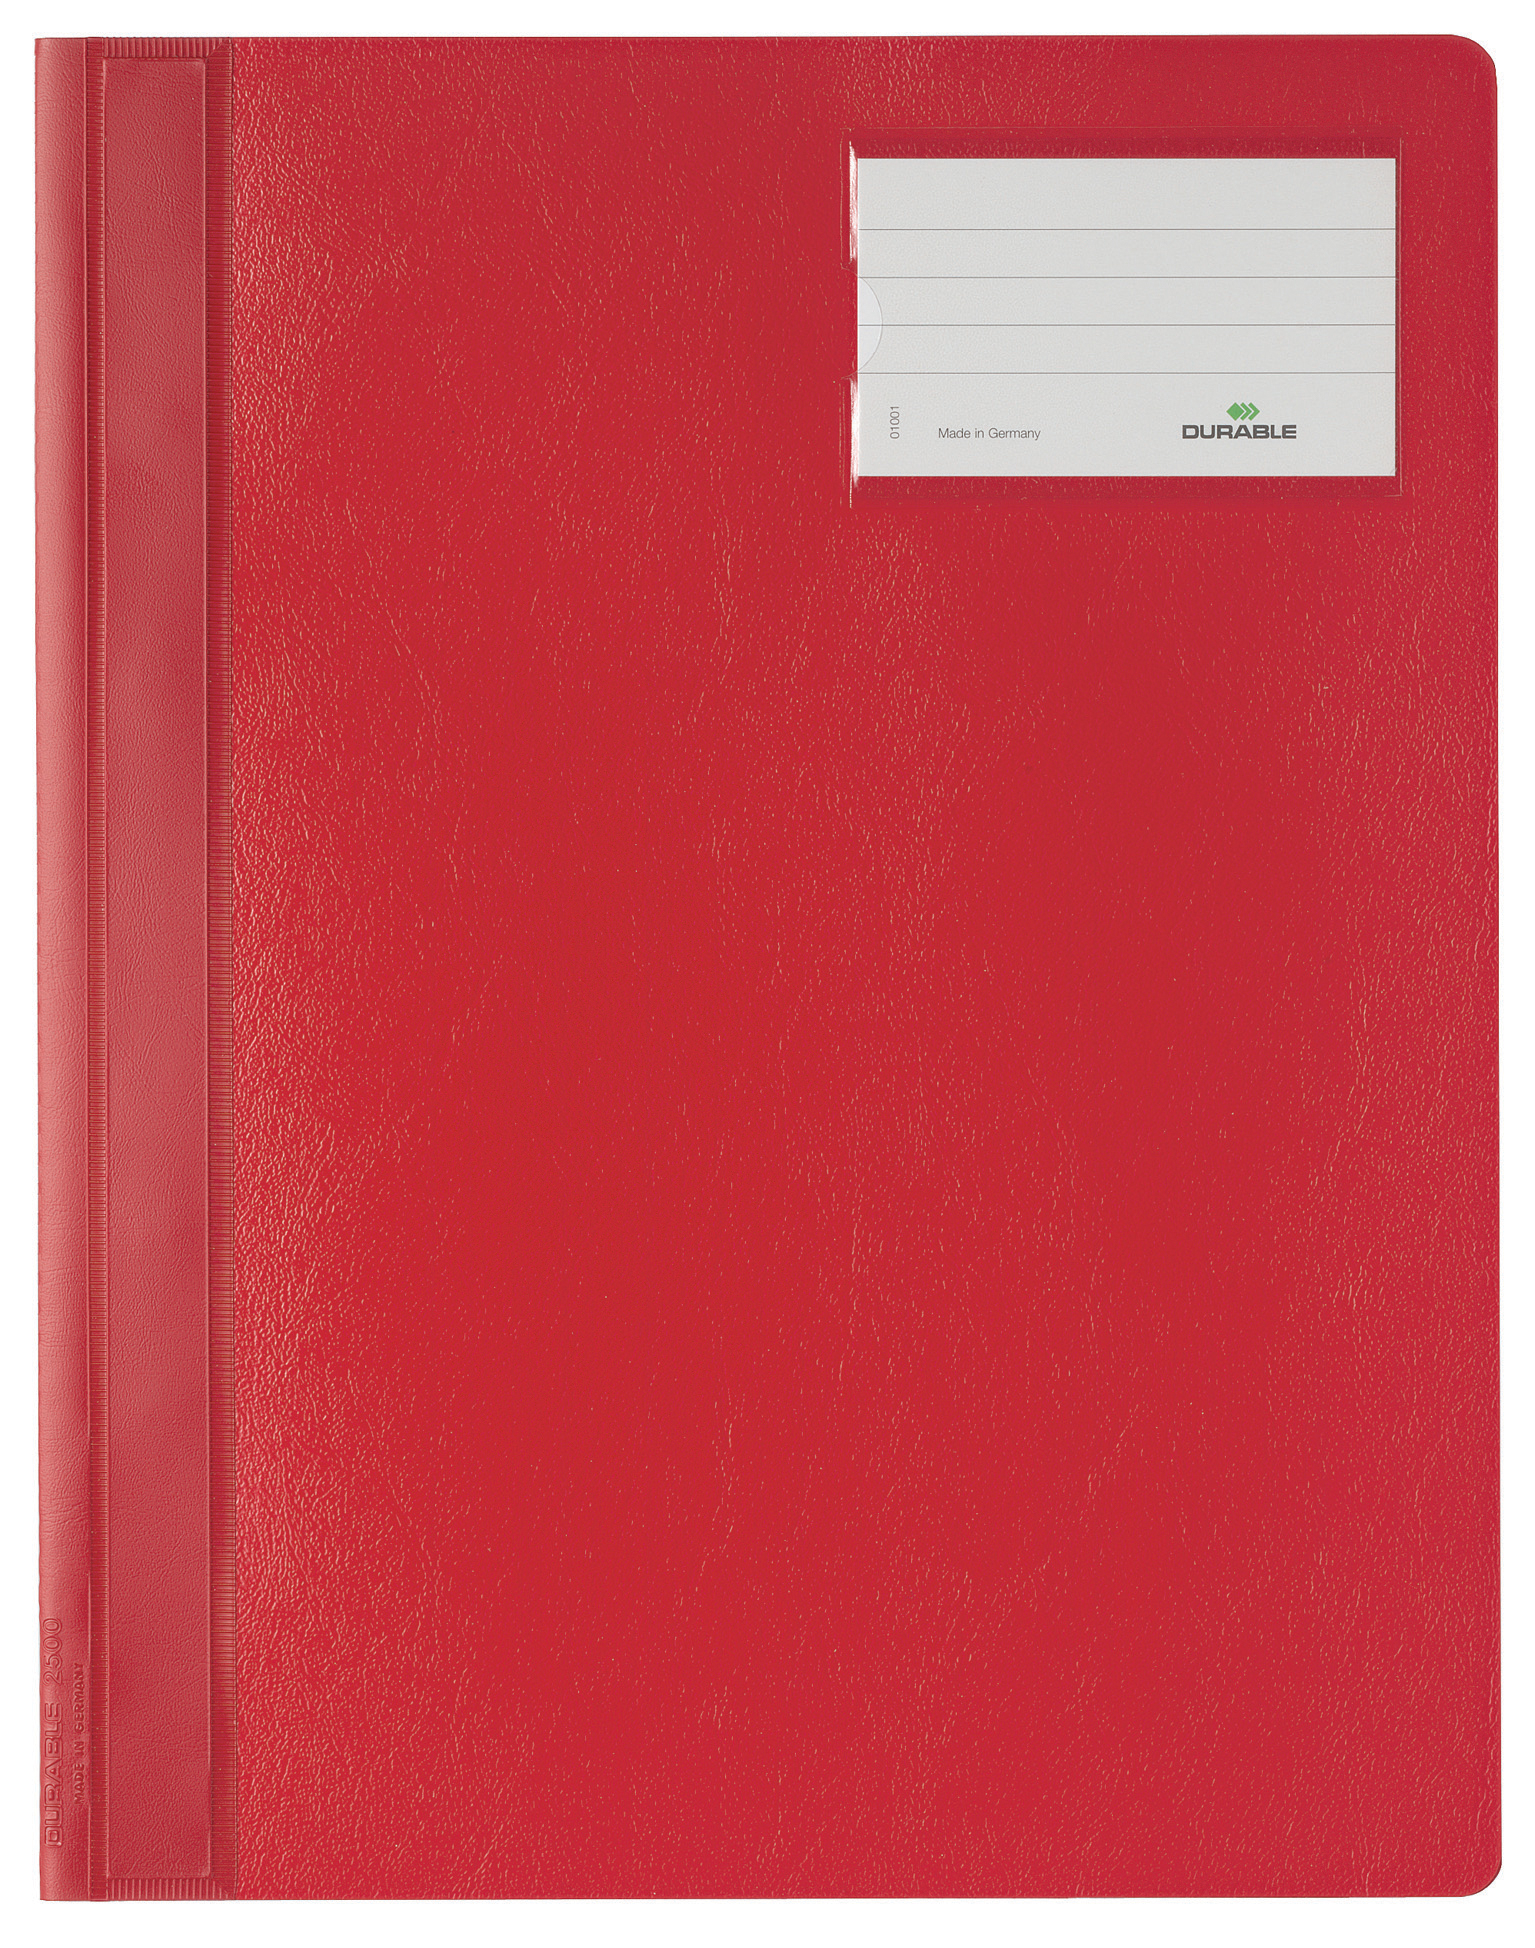 DURABLE Dossier-classeur A4 250003 rouge